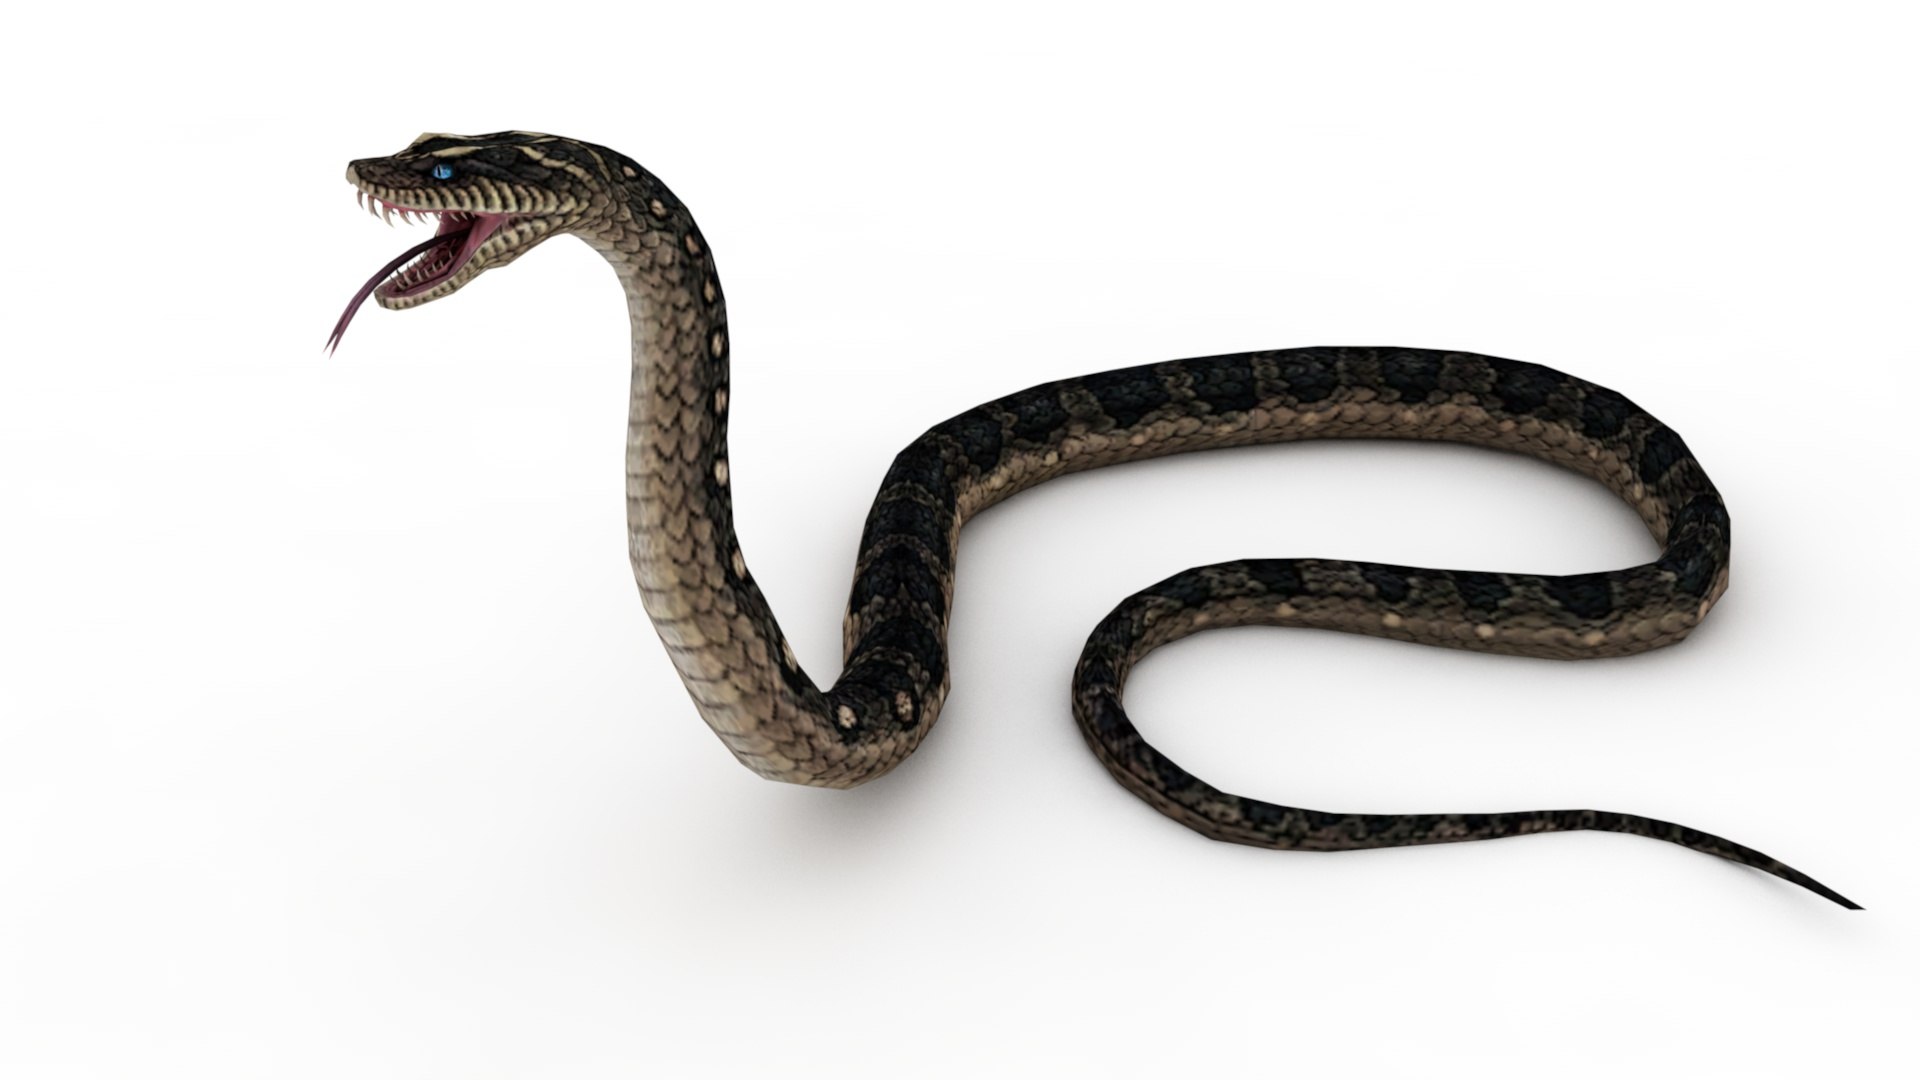 Cobra Snake 3d model - CadNav